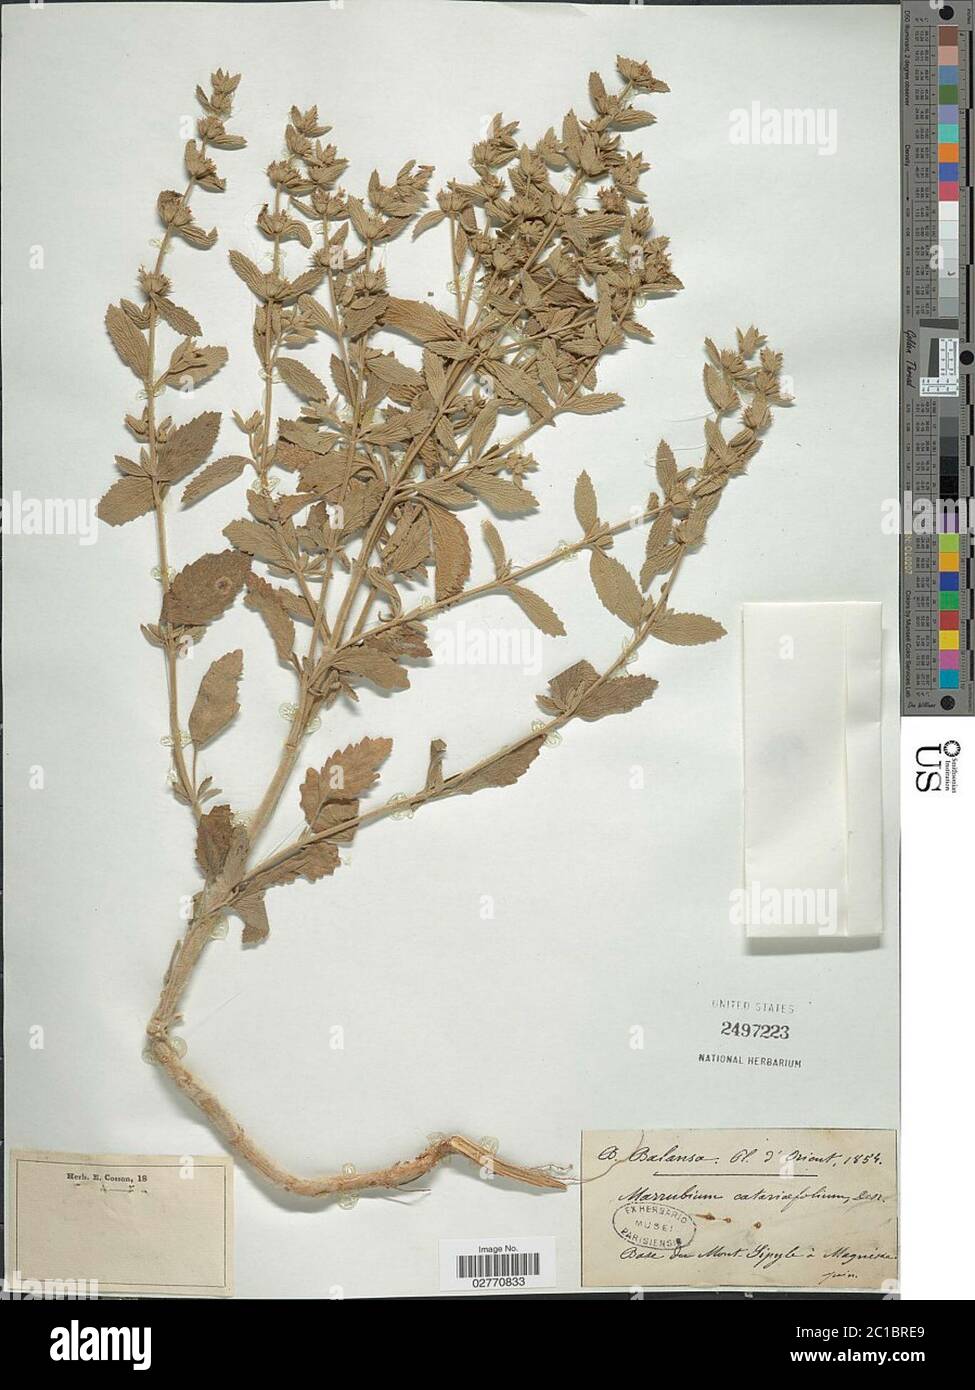 Marrubium catariifolium Desr Marrubium catariifolium Desr. Stock Photo